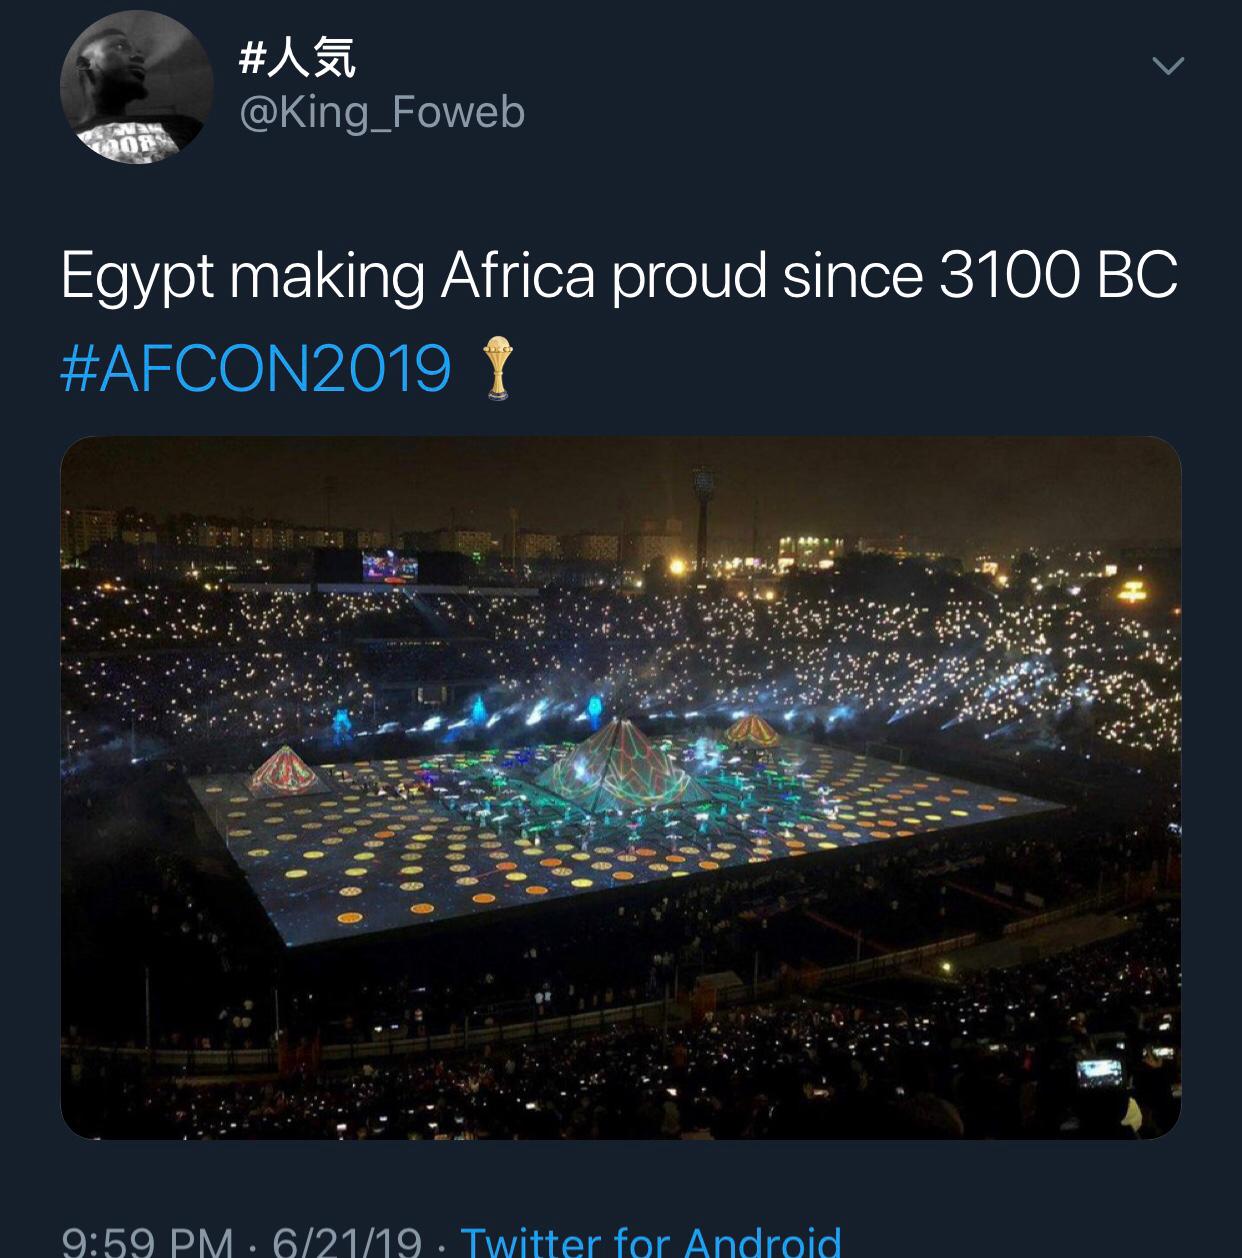 افتتاح امم افريقيا مصر جعلتنا نشعر بالفخر